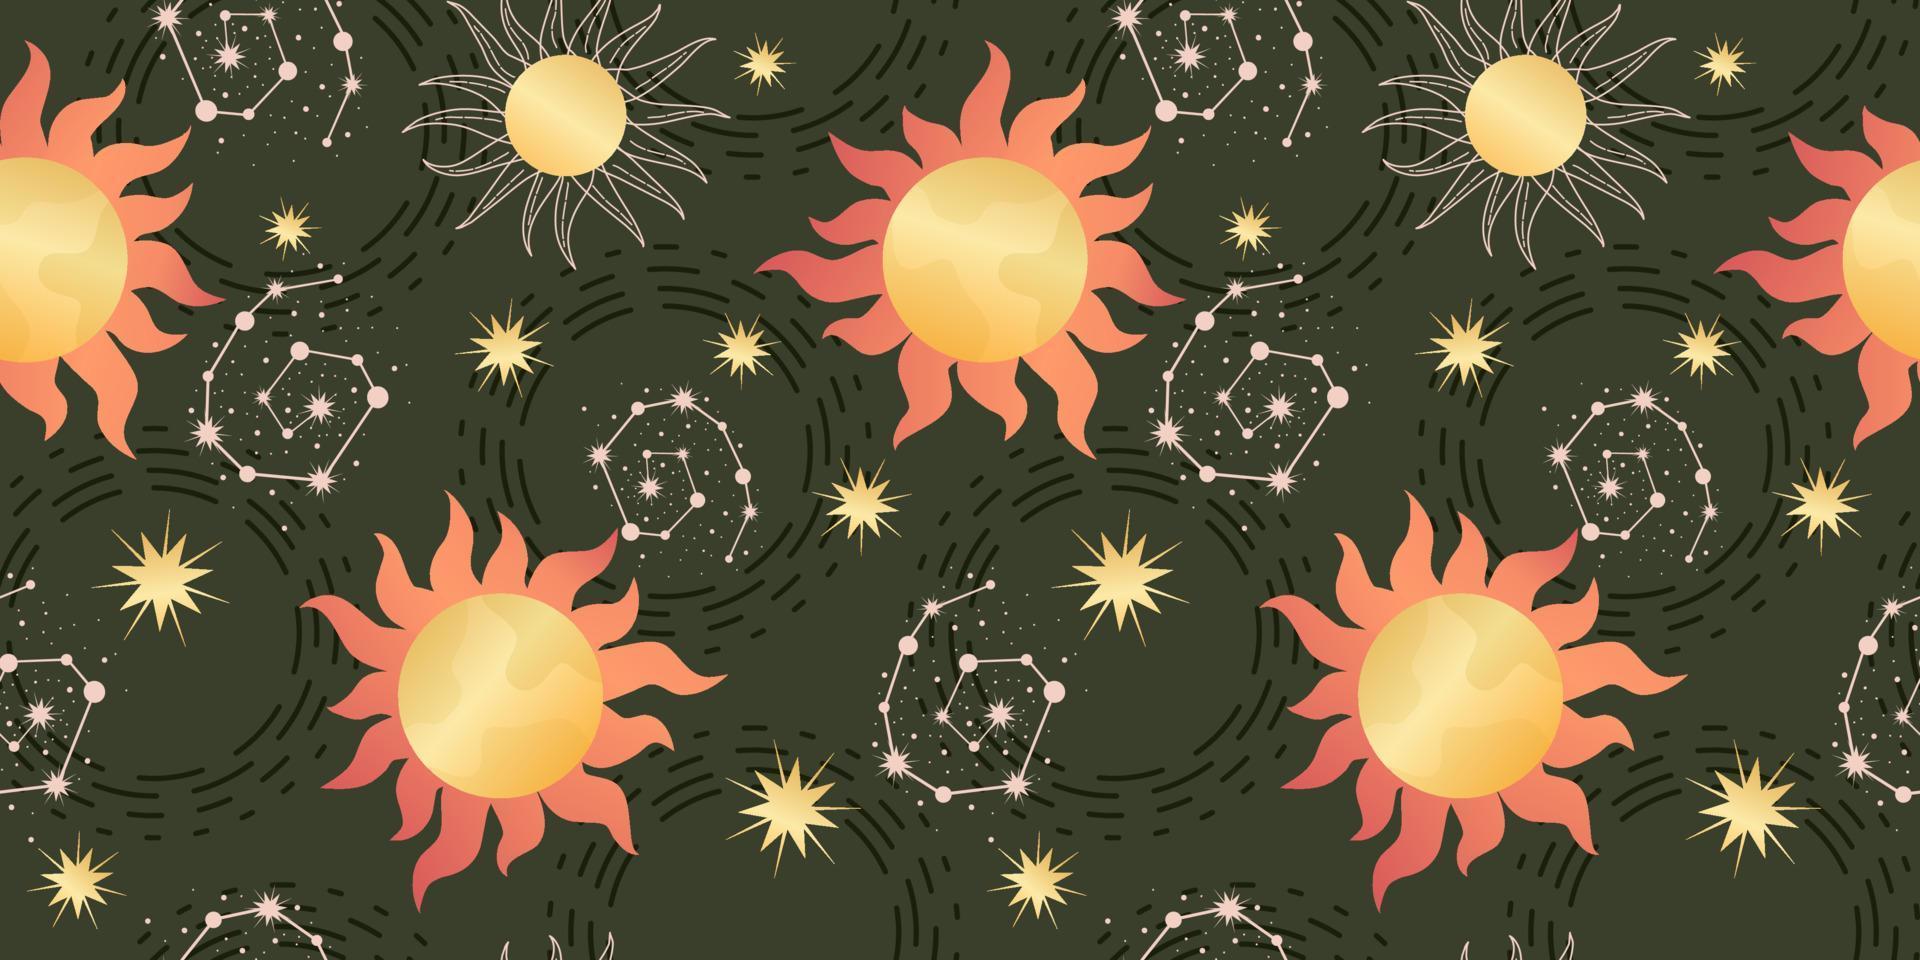 modèle sans couture céleste étoile avec soleil et constellations. astrologie magique dans un style bohème vintage. soleil doré avec rayons et étoiles. illustration vectorielle. vecteur